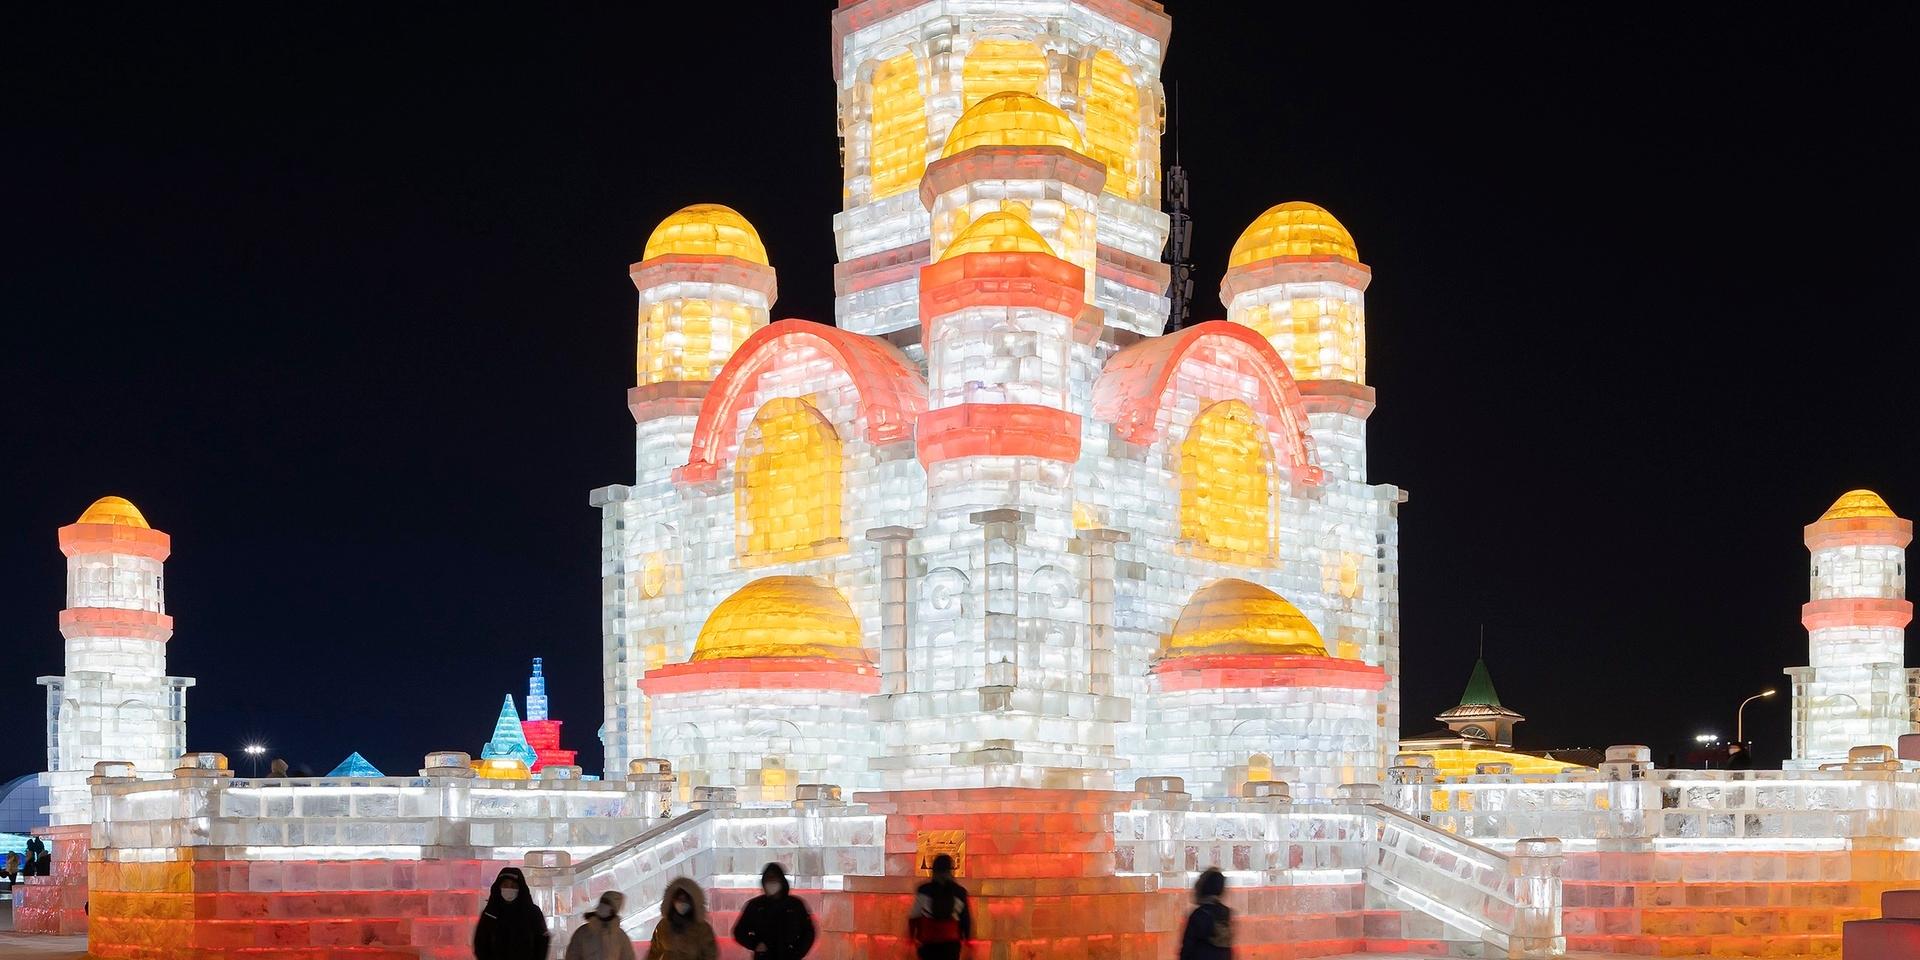 Harbin i nordöstra Kina är känd för sin isfestival. Arkivbild.